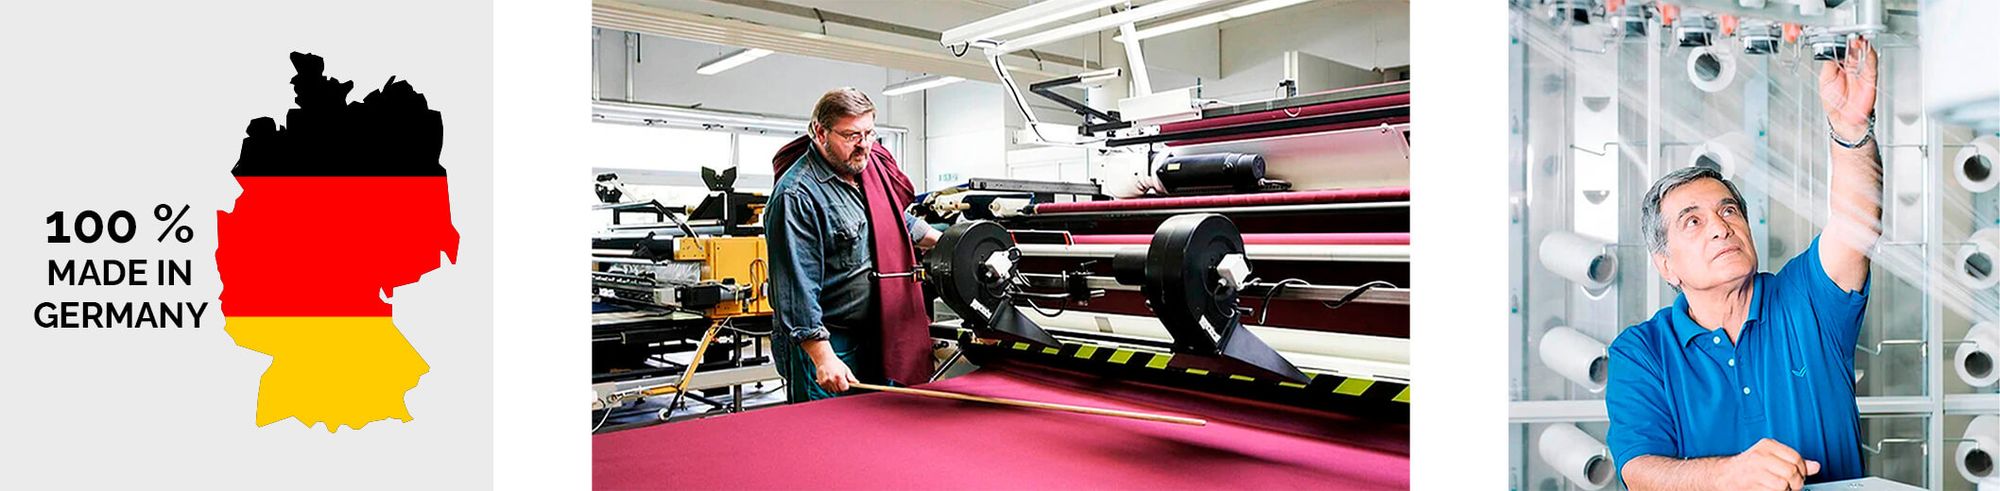 Familienbetrieb und Made in Germany - Trigema Textilien